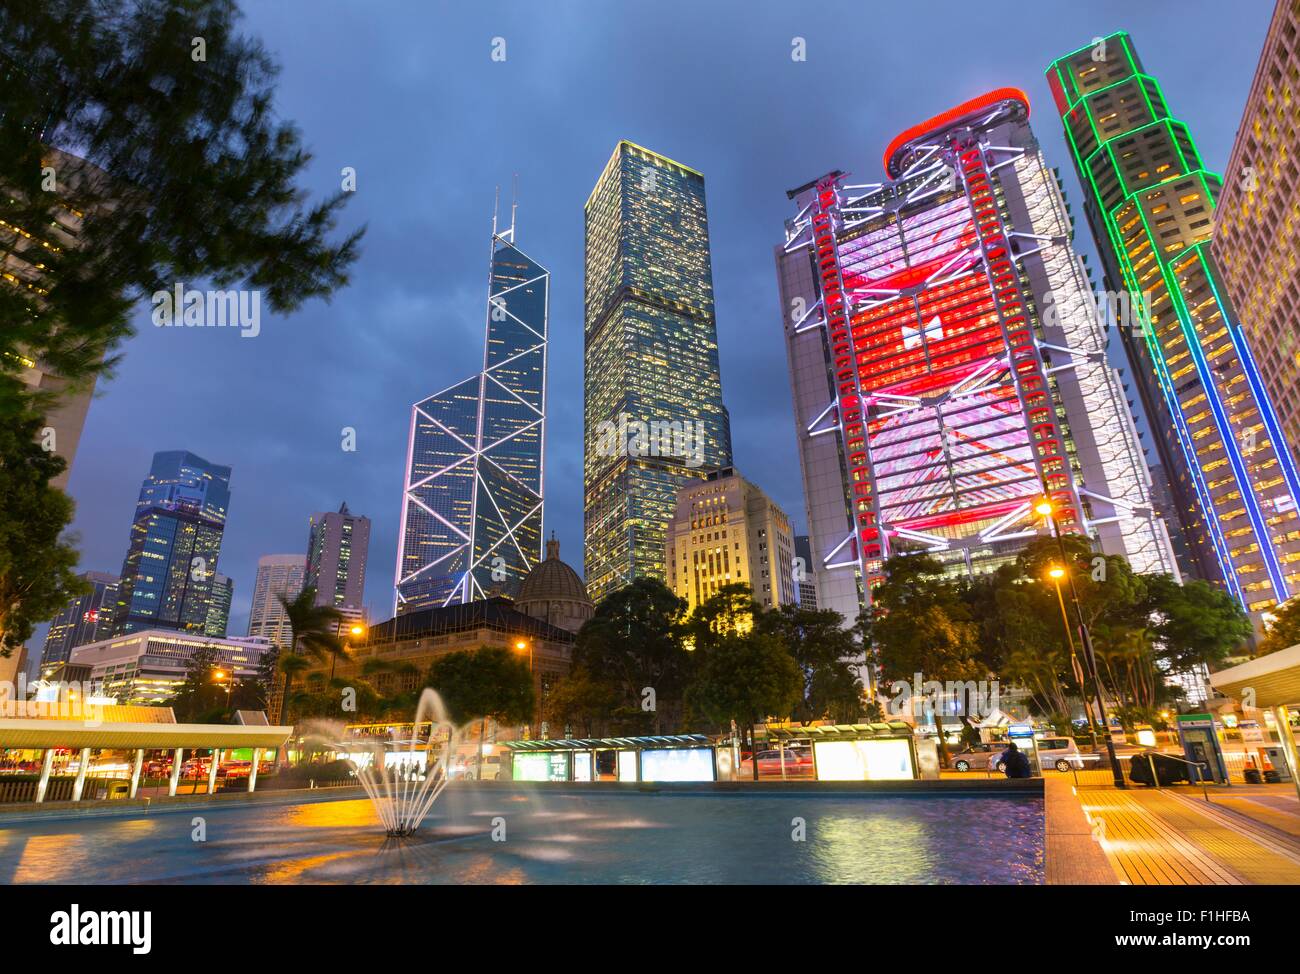 Statue Square bâtiments illuminés de nuit, Hong Kong, Chine Banque D'Images